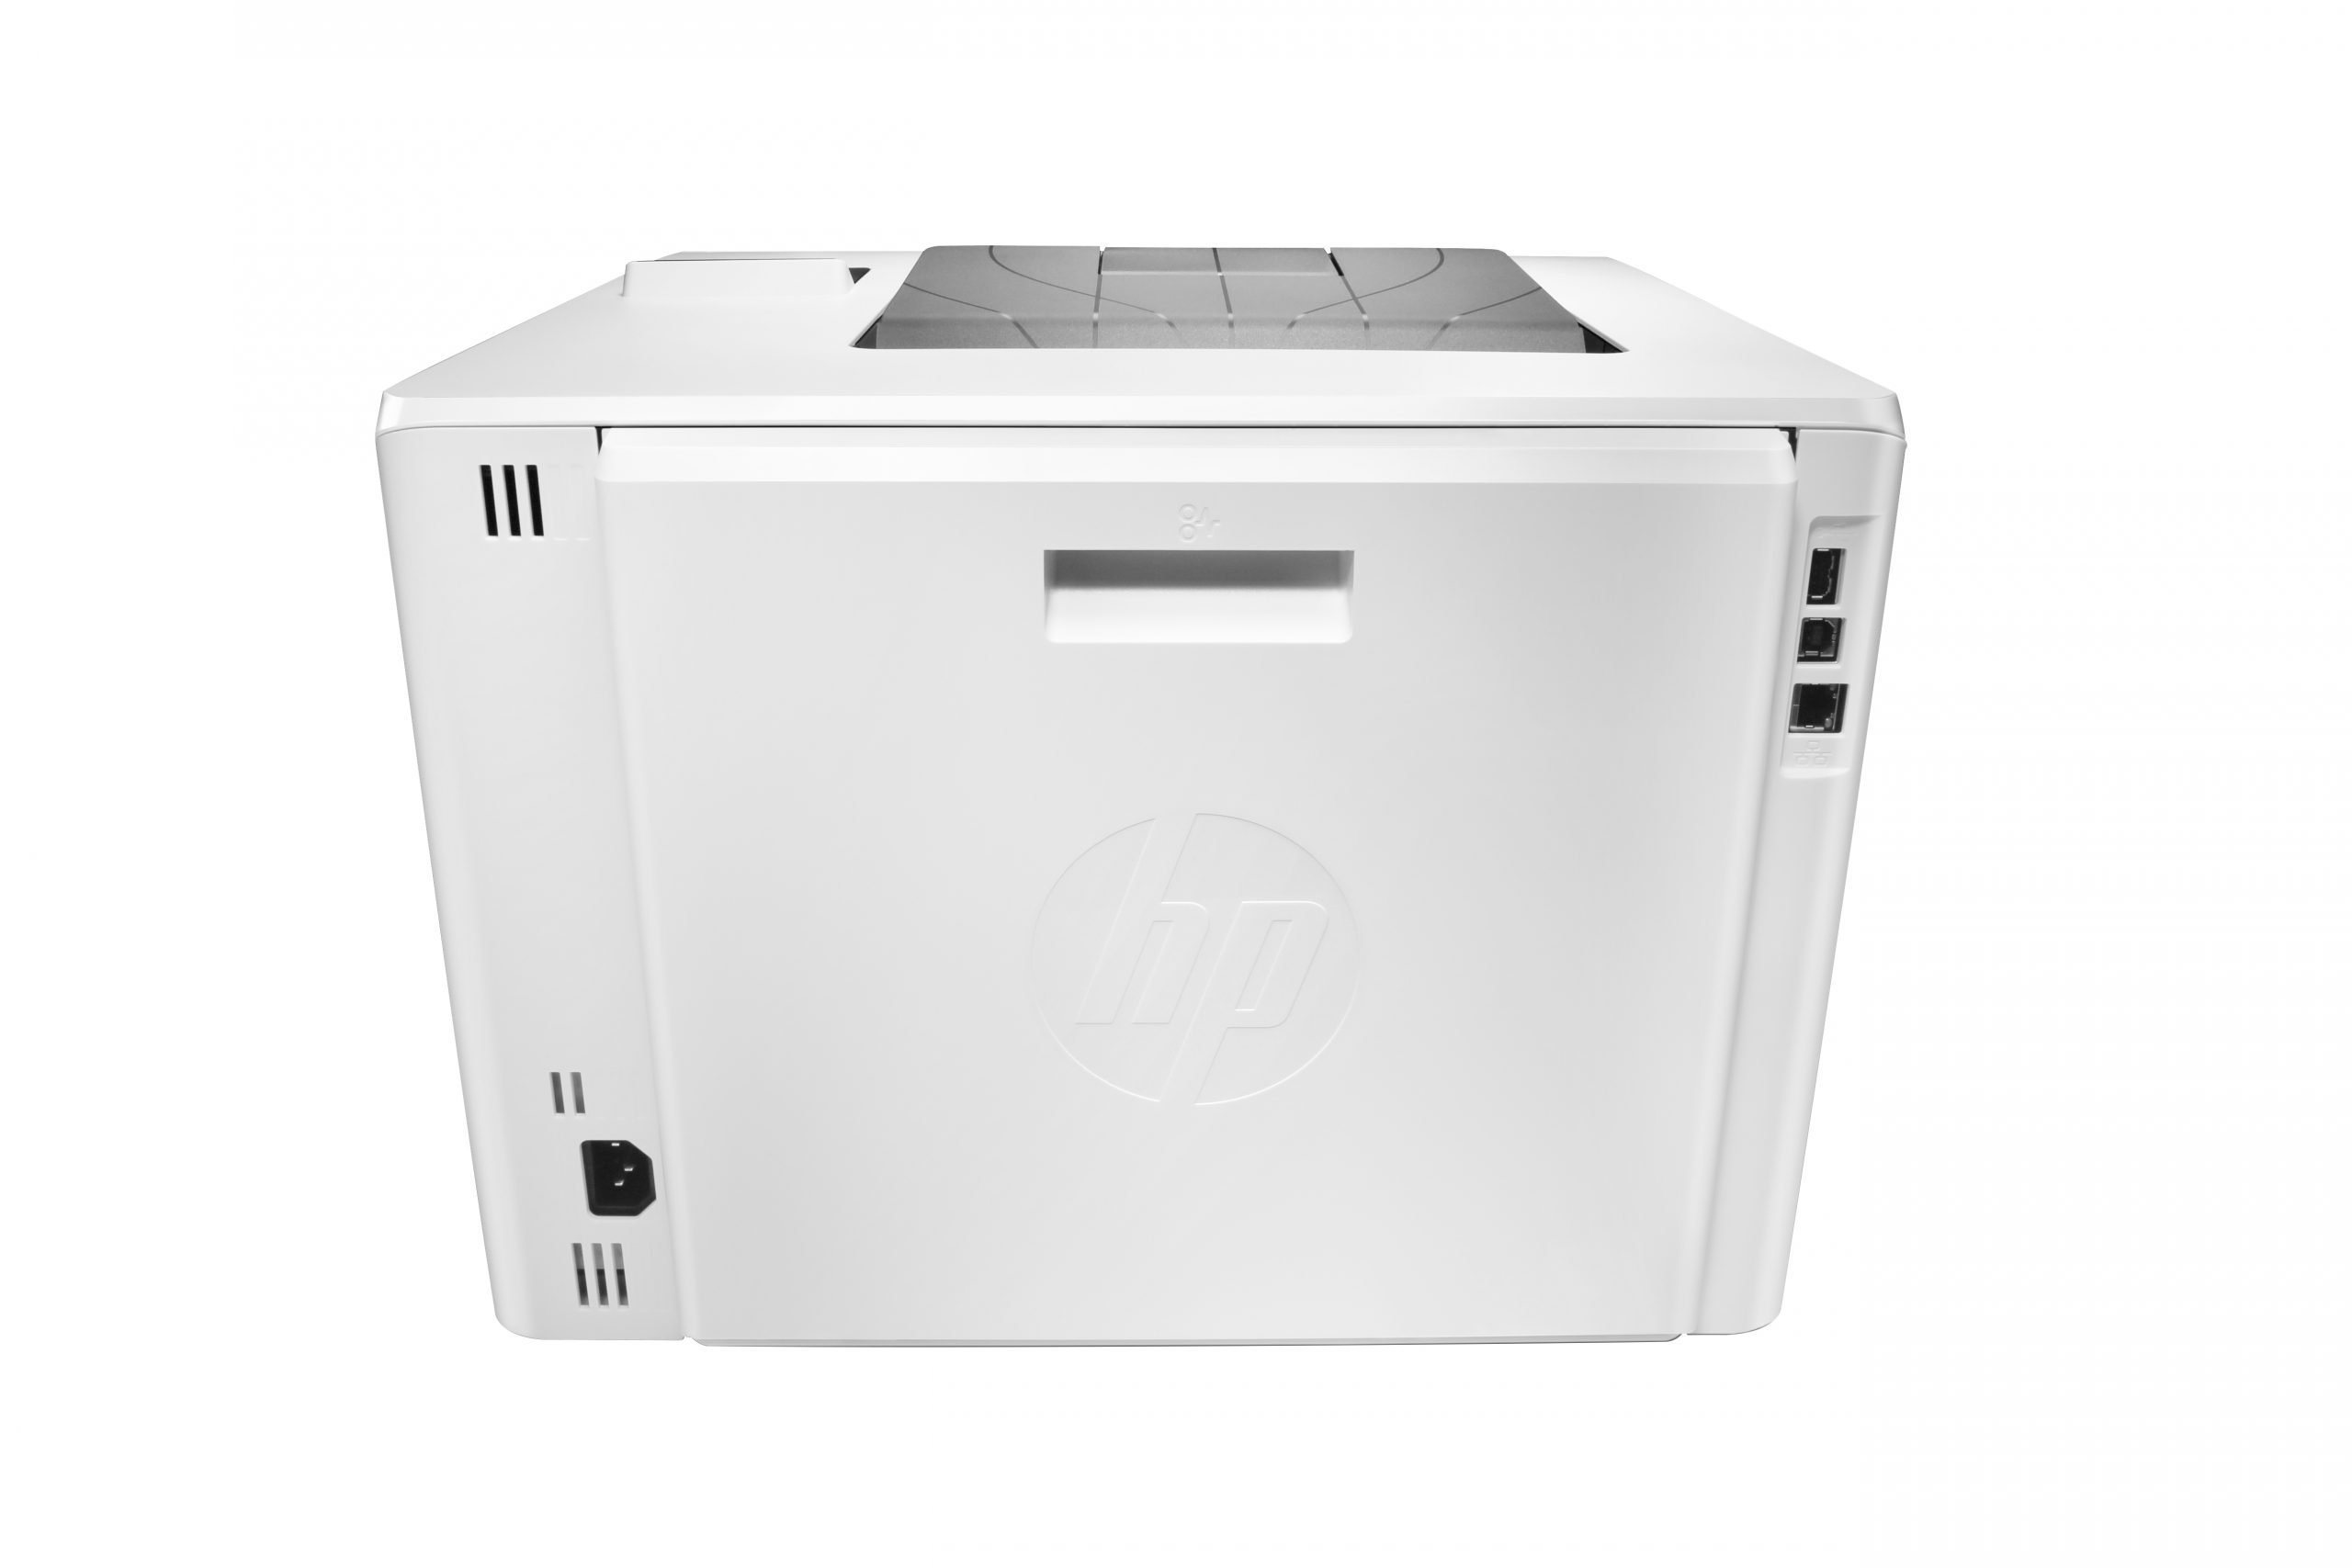 HP Color LaserJet Pro M452dn A4 color laser printer 600x600 DPI 27ppm Duplex Duplex USB Network